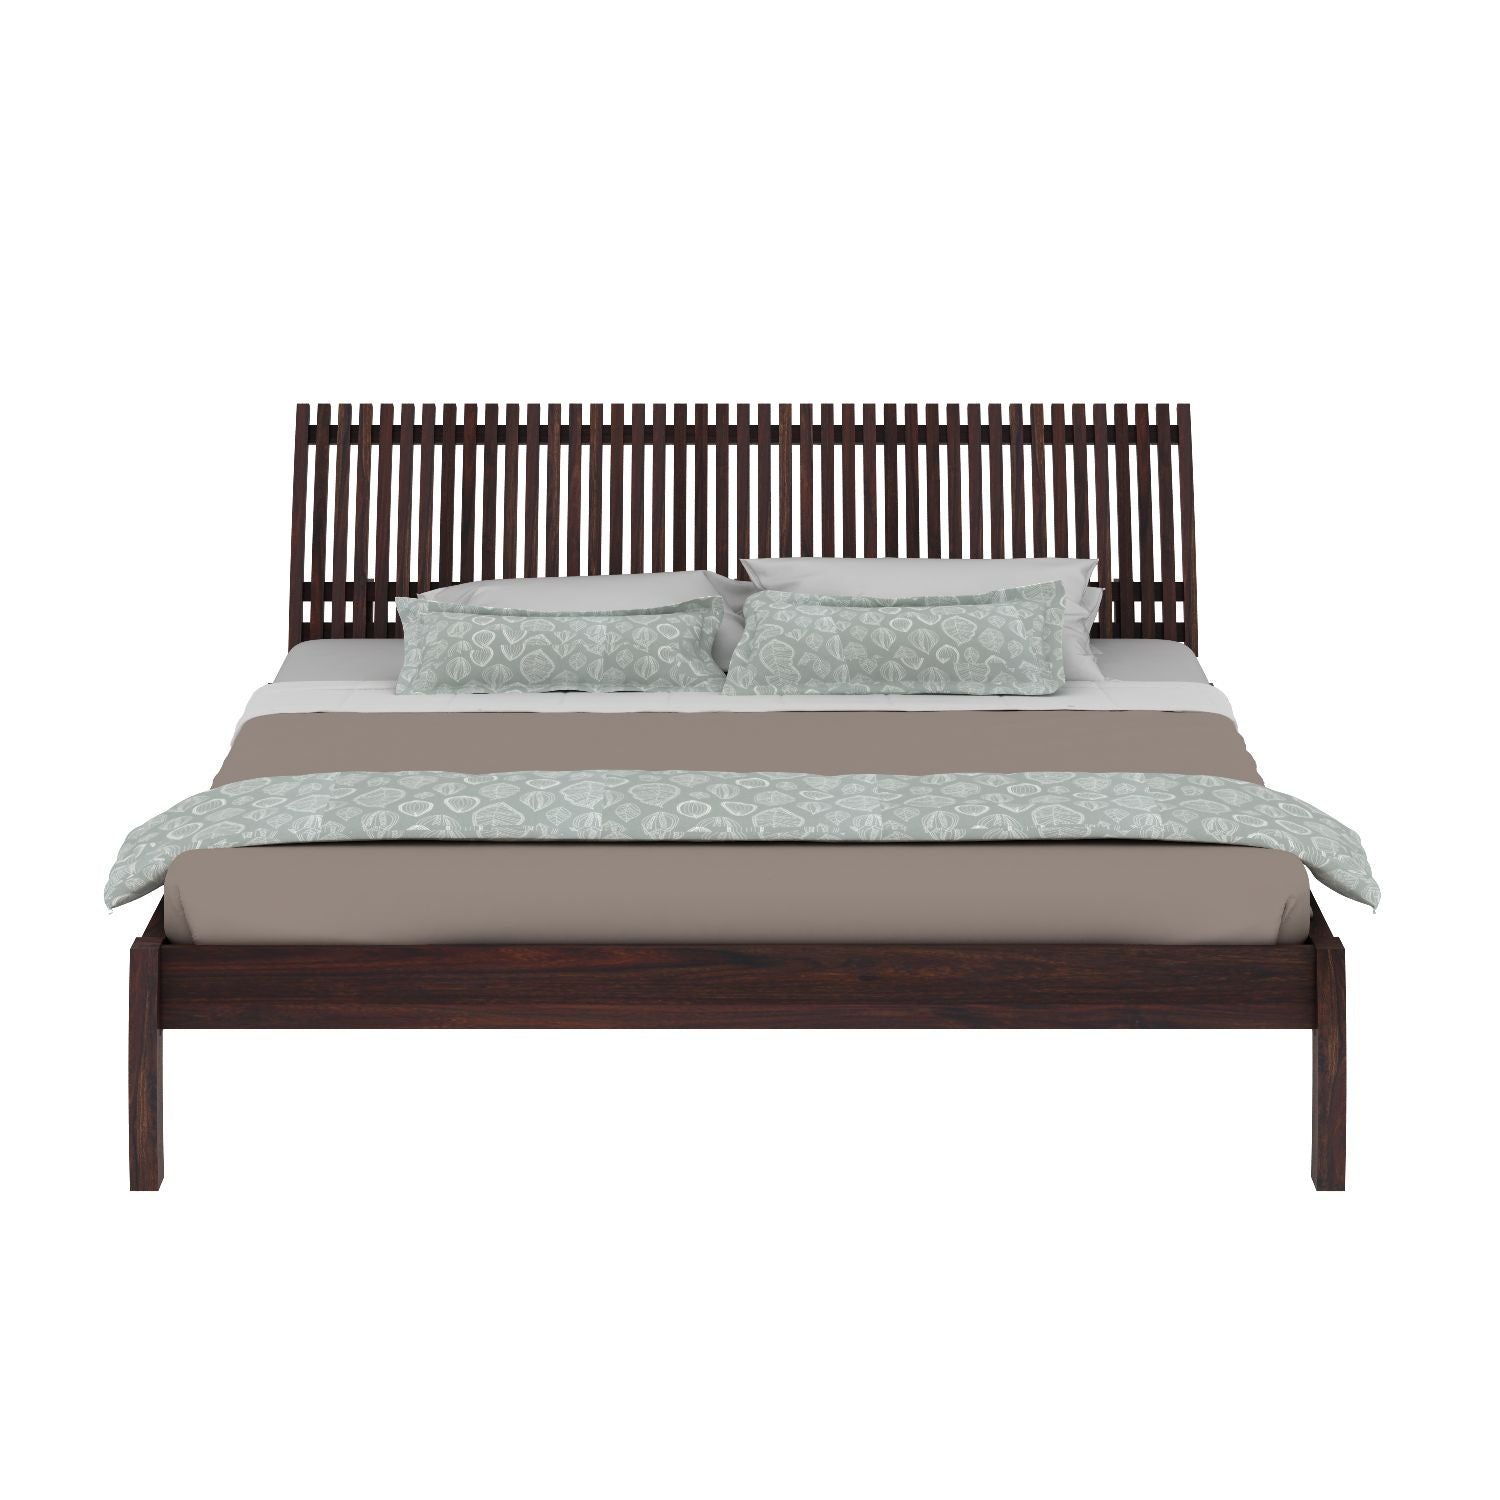 Dumdum Solid Sheesham Wood Bed Without Storage (King Size, Walnut Finish)